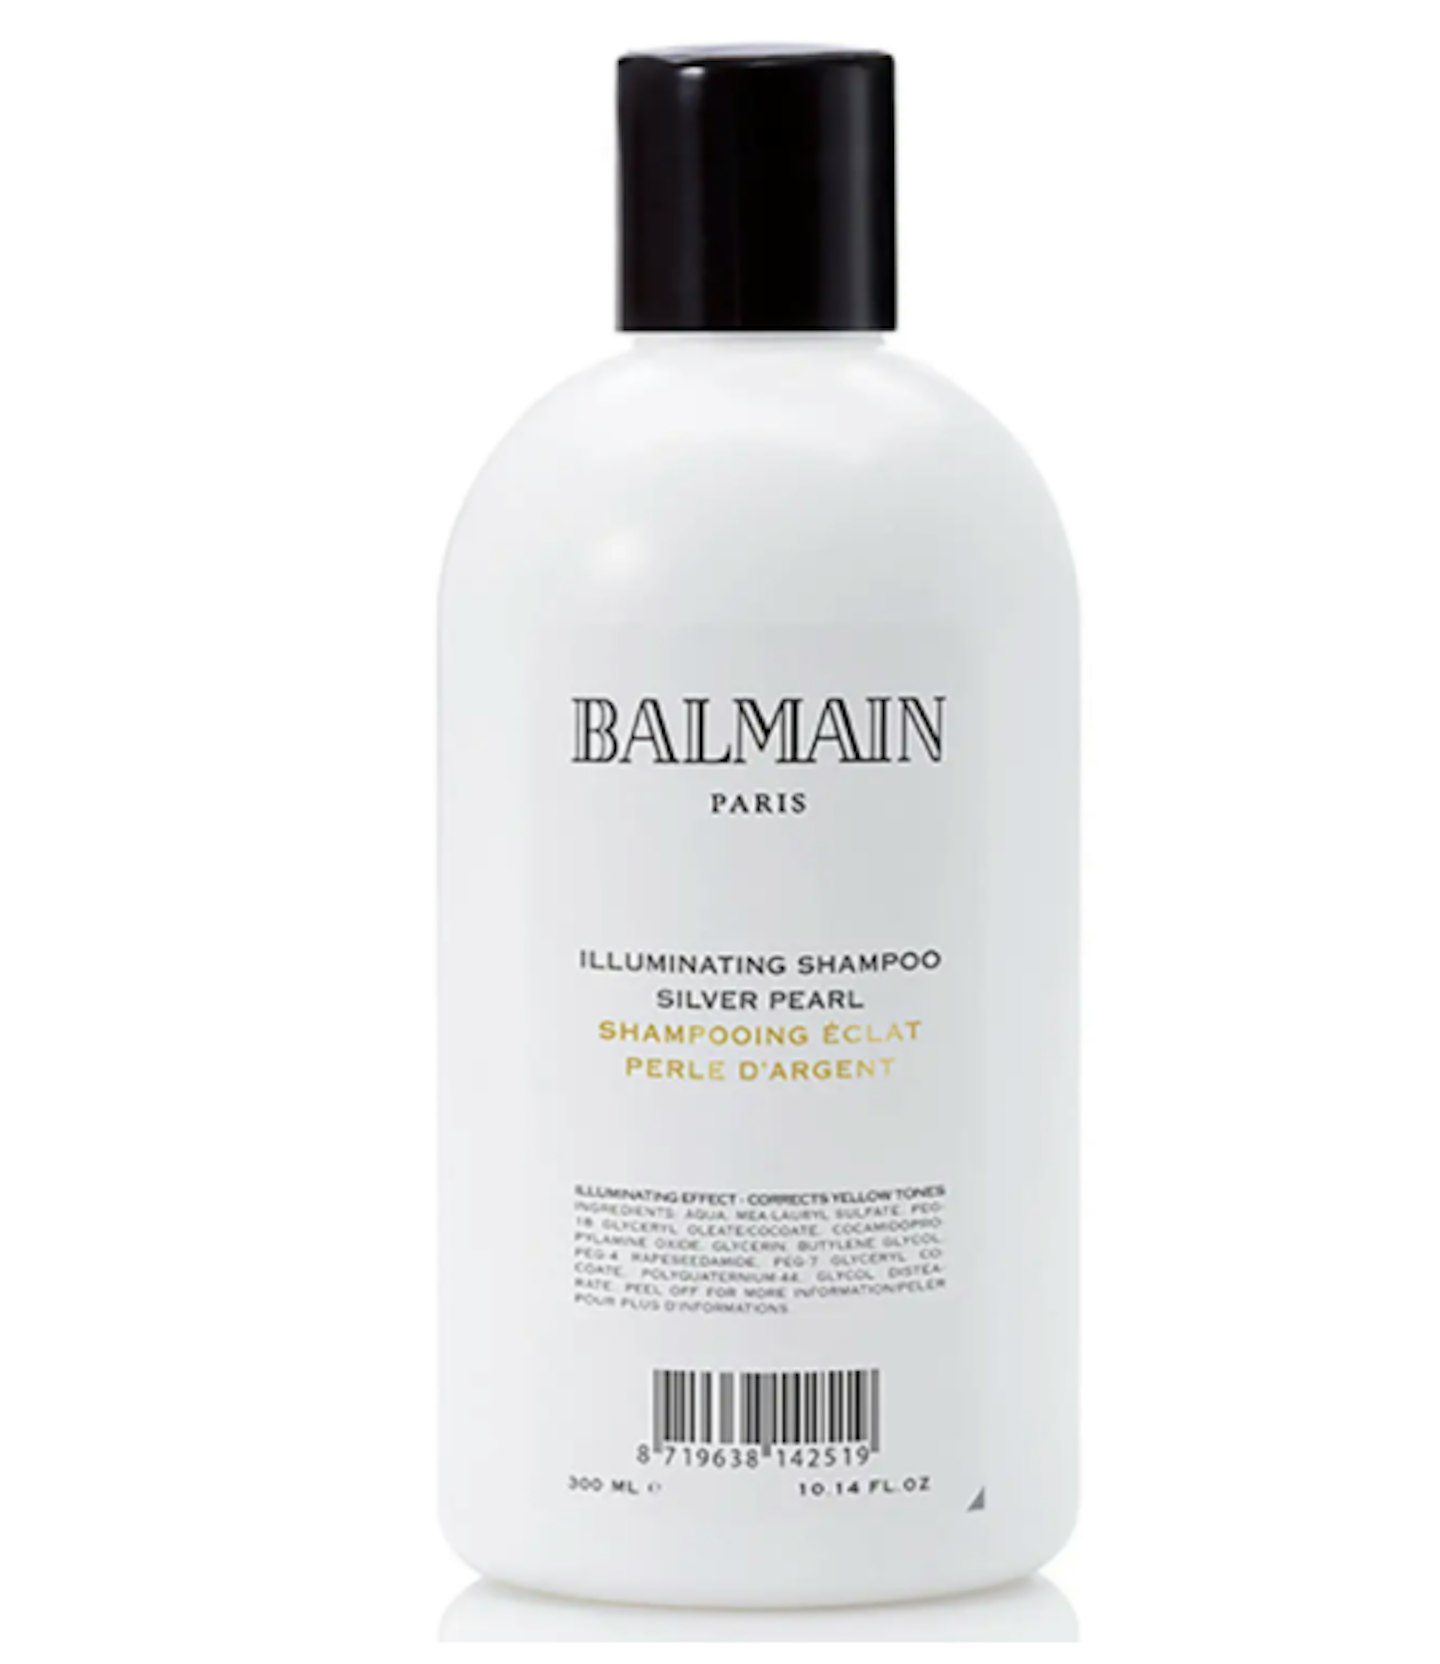 Balmain Hair Illuminating Shampoo in Silver Pearl